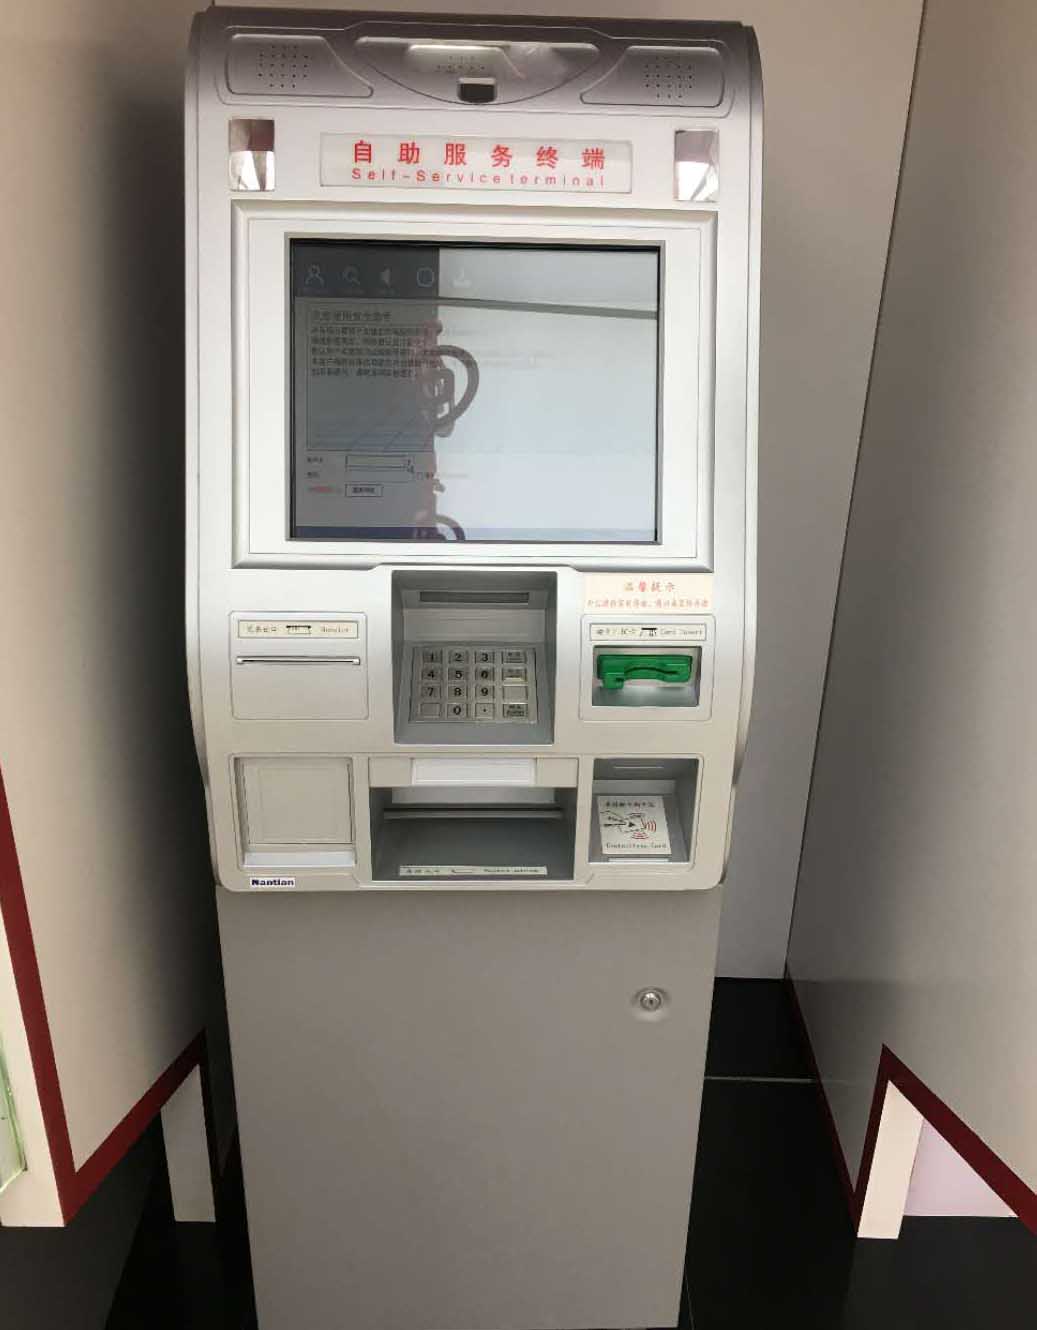 触摸屏玻乐动官网APP【中国】有限公司及条纹玻乐动官网APP【中国】有限公司在银行ATM机上的应用